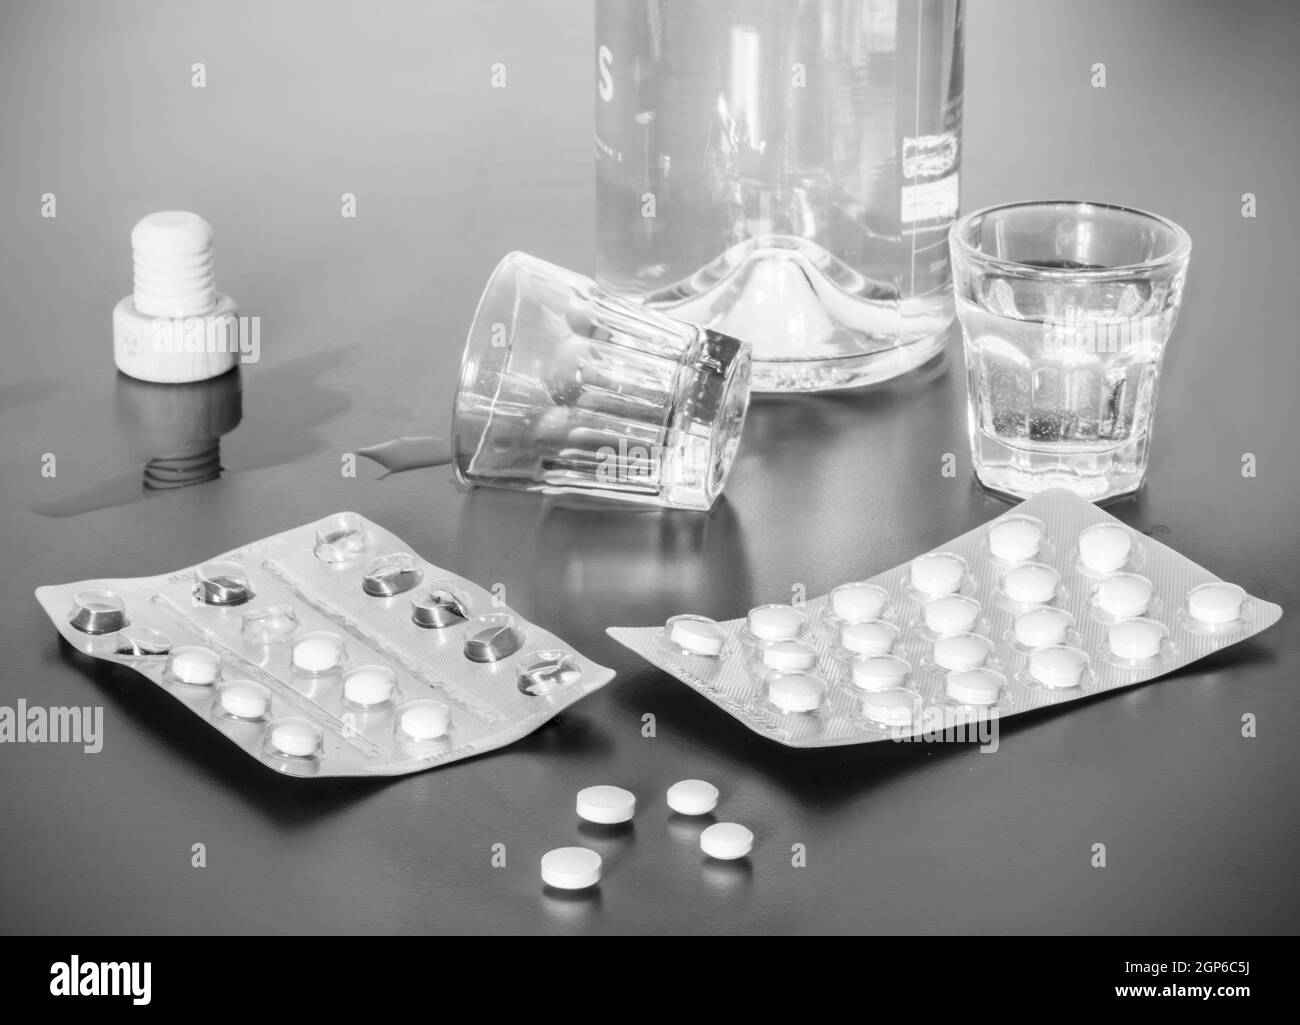 Pilules et d'alcool sur un tableau gris. Concept pour l'abus de drogues. Banque D'Images